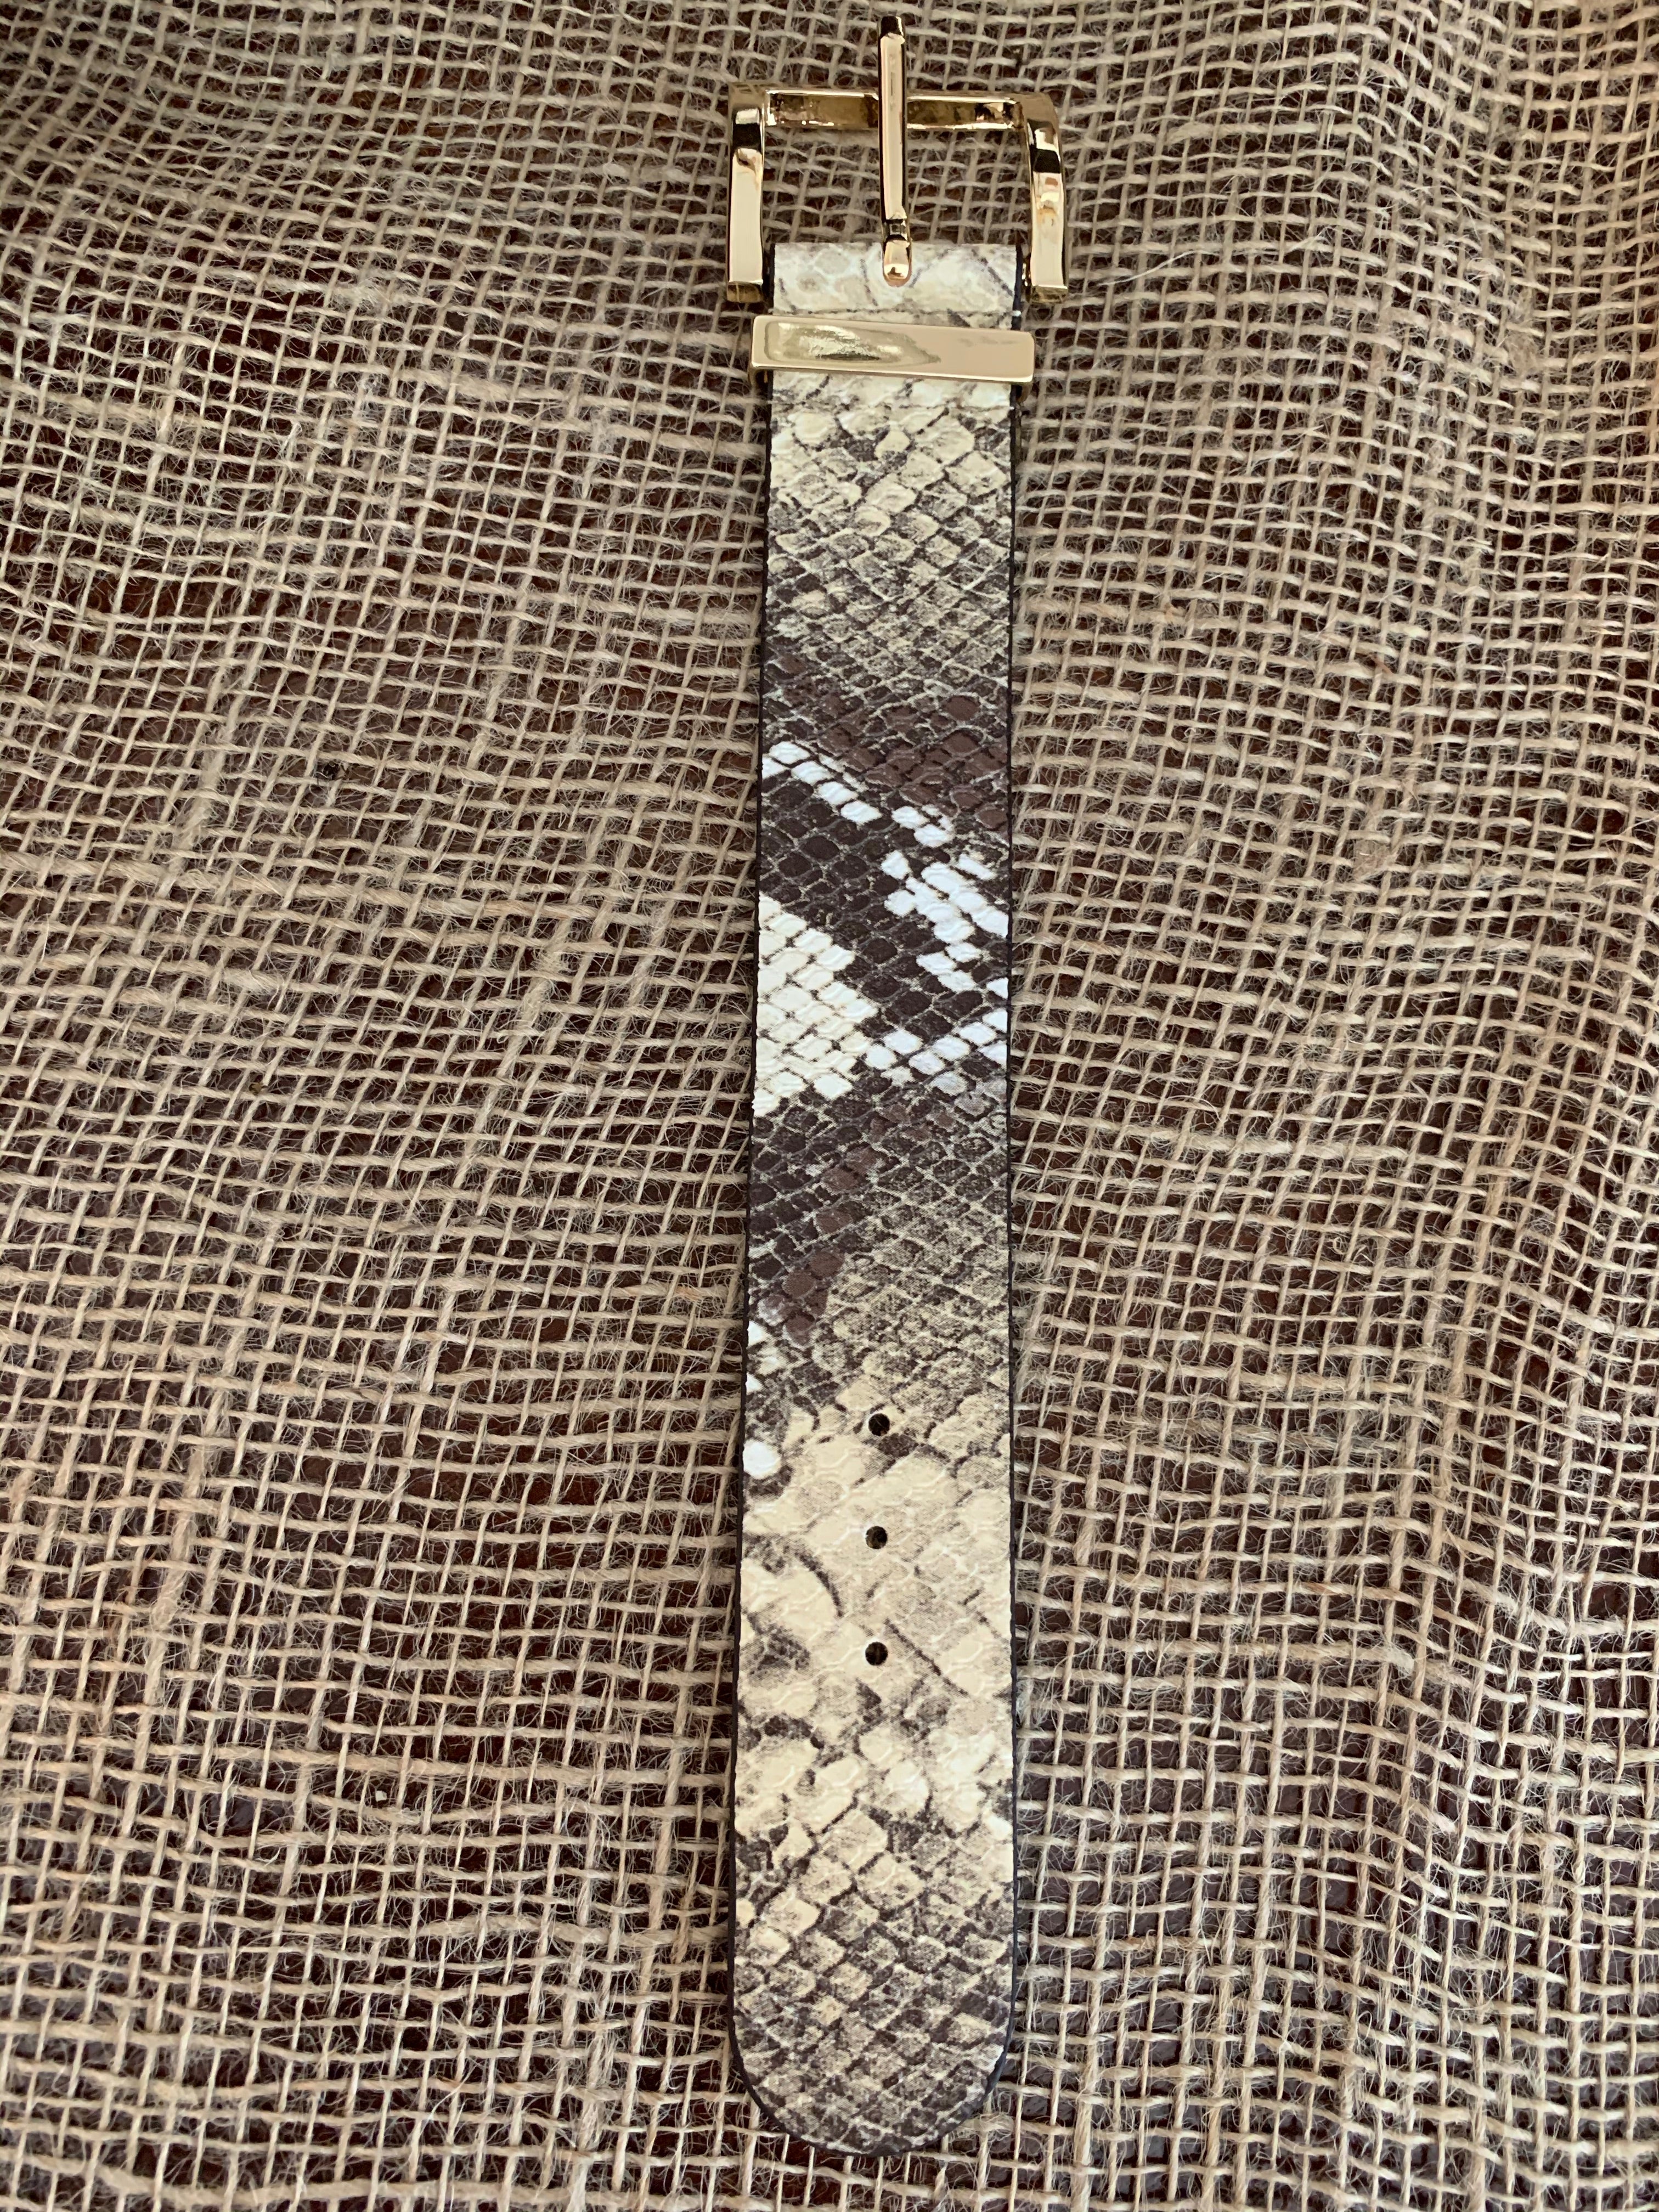 Snake skin print grey  leather belt bracelet with gold buckle fastener